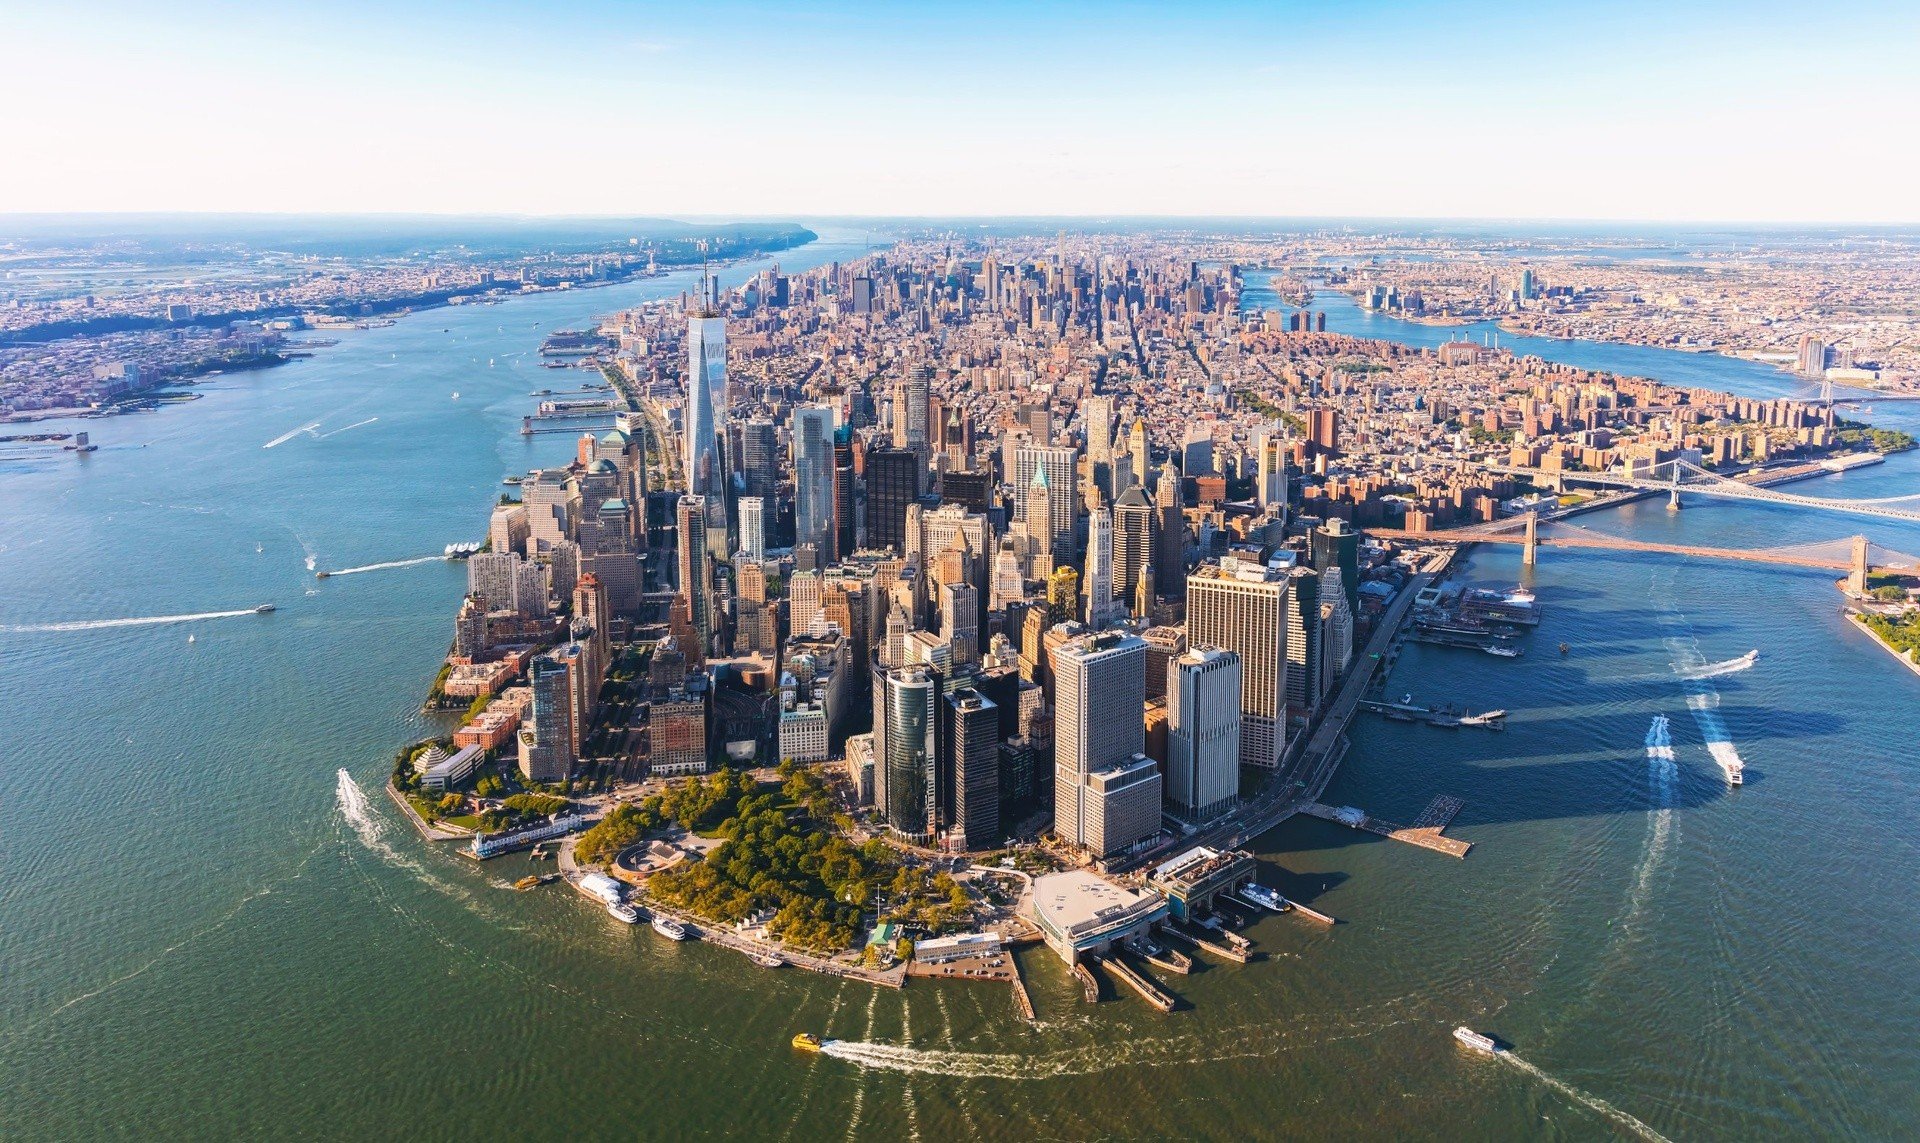 Nowy Jork: jak zorganizować budżetową podróż marzeń? Tanie noclegi, darmowe  atrakcje, metro i inne wskazówki | Strona Podróży